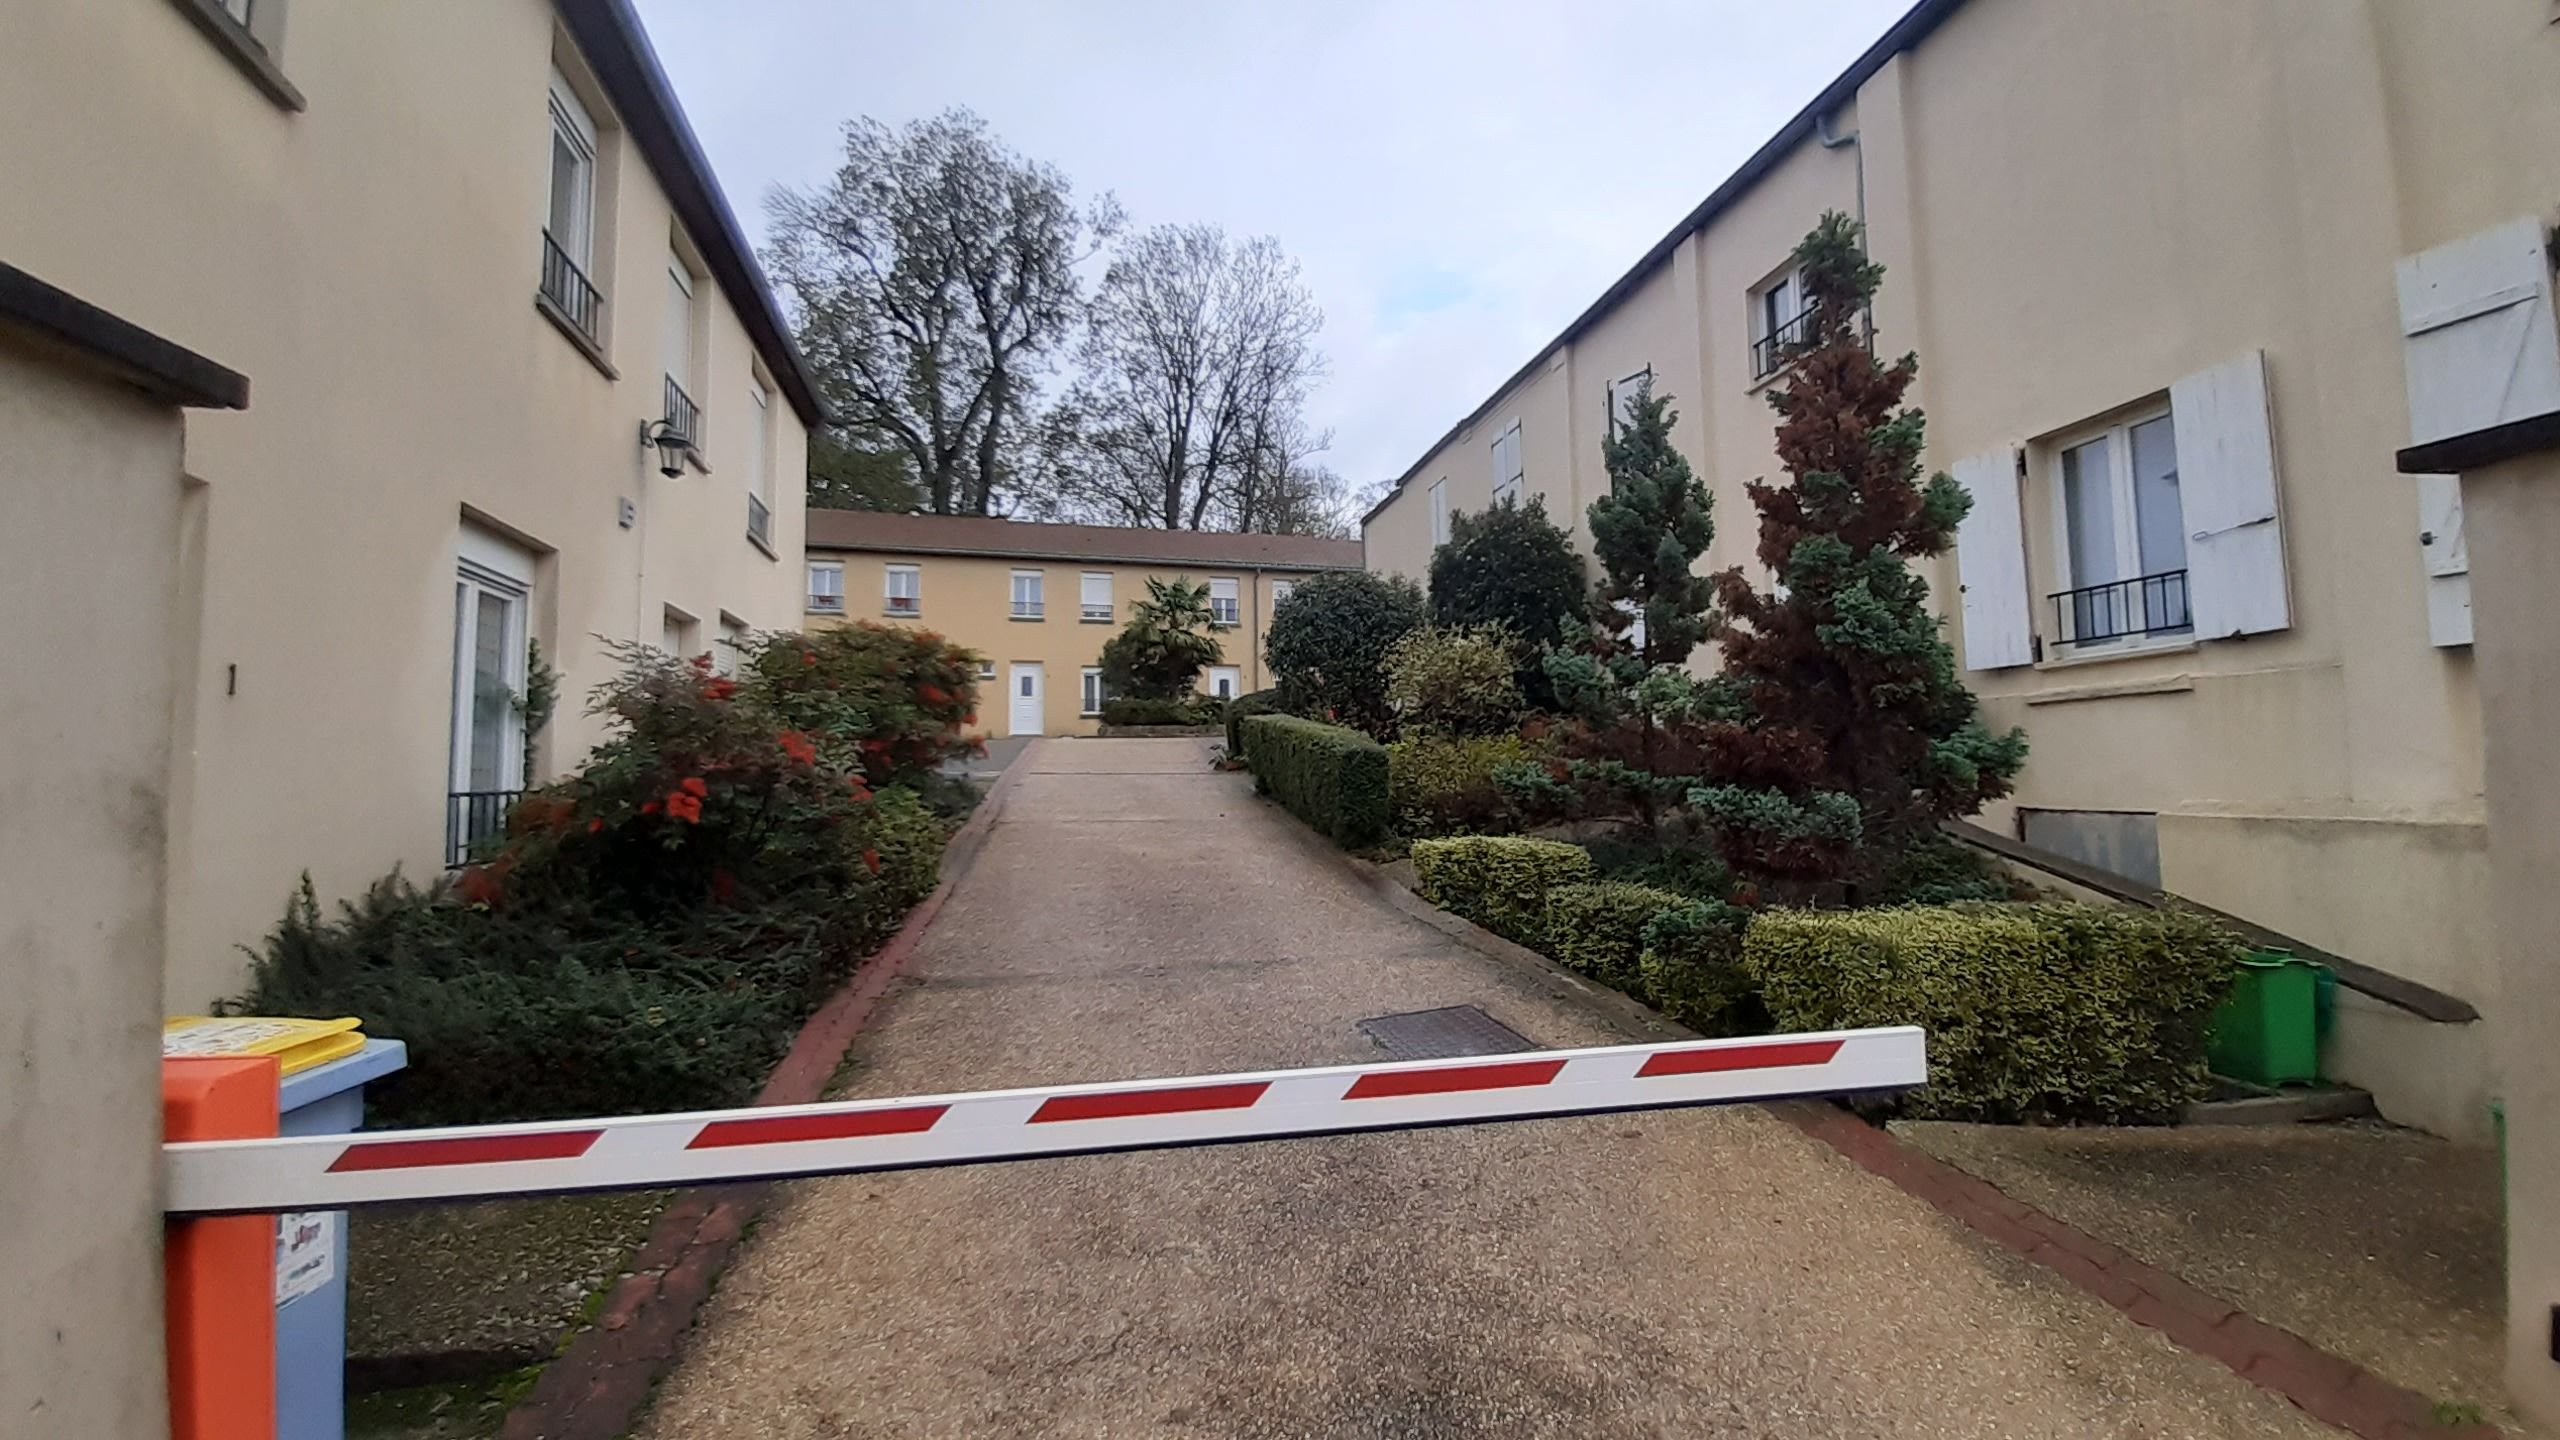 Les faits s'étaient produits à Belloy-en-France (Val-d'Oise), en décembre 2020, dans cette petite résidence (Archives). LP/Frédéric Naizot